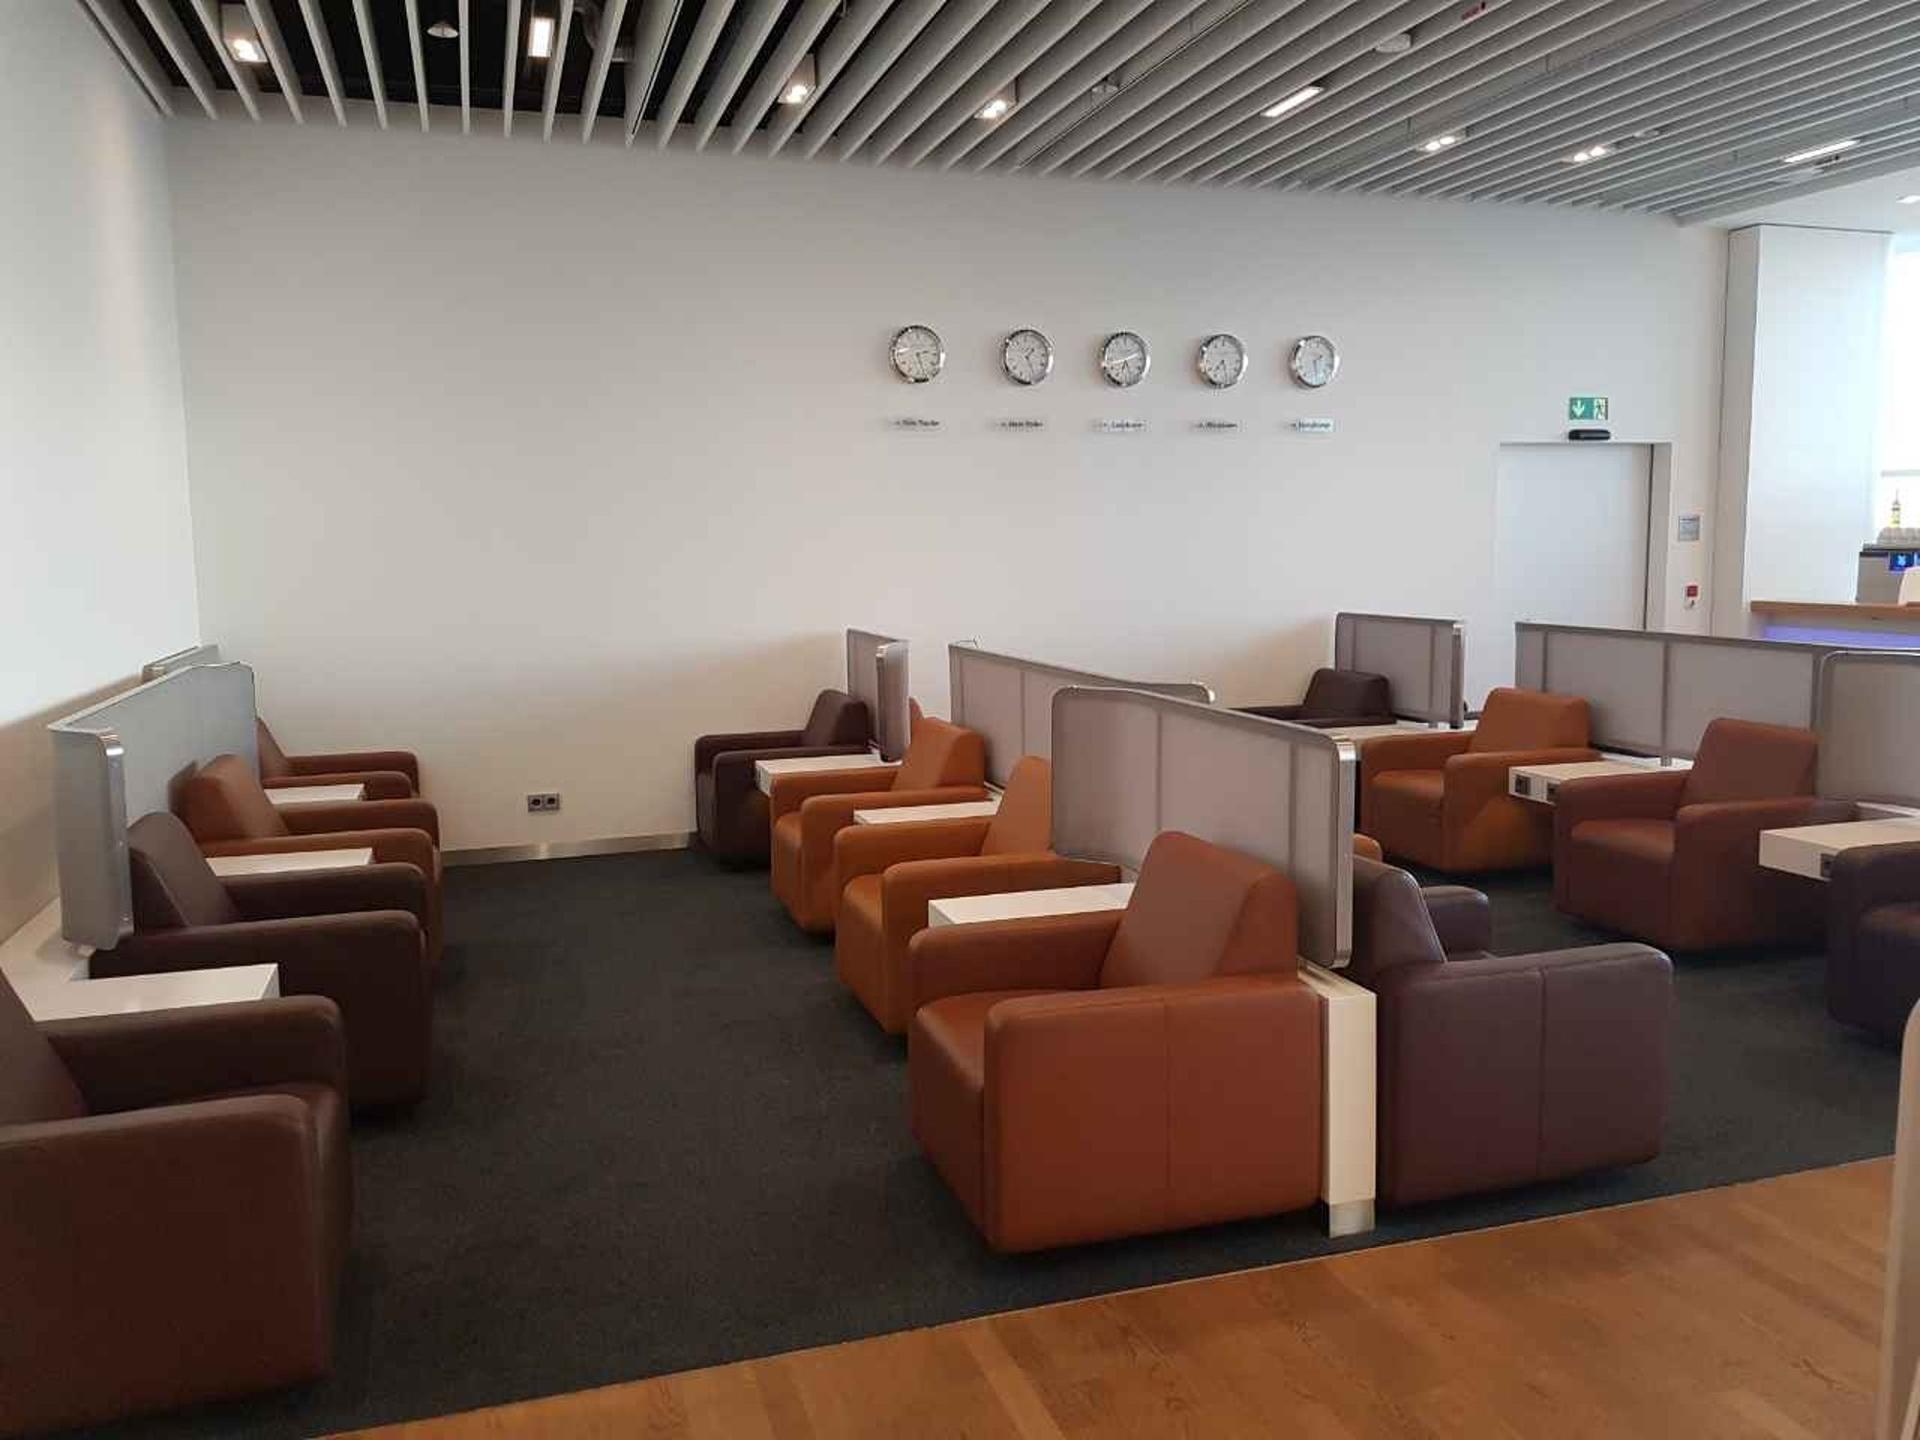 Lufthansa Senator Lounge (Non-Schengen) image 2 of 14